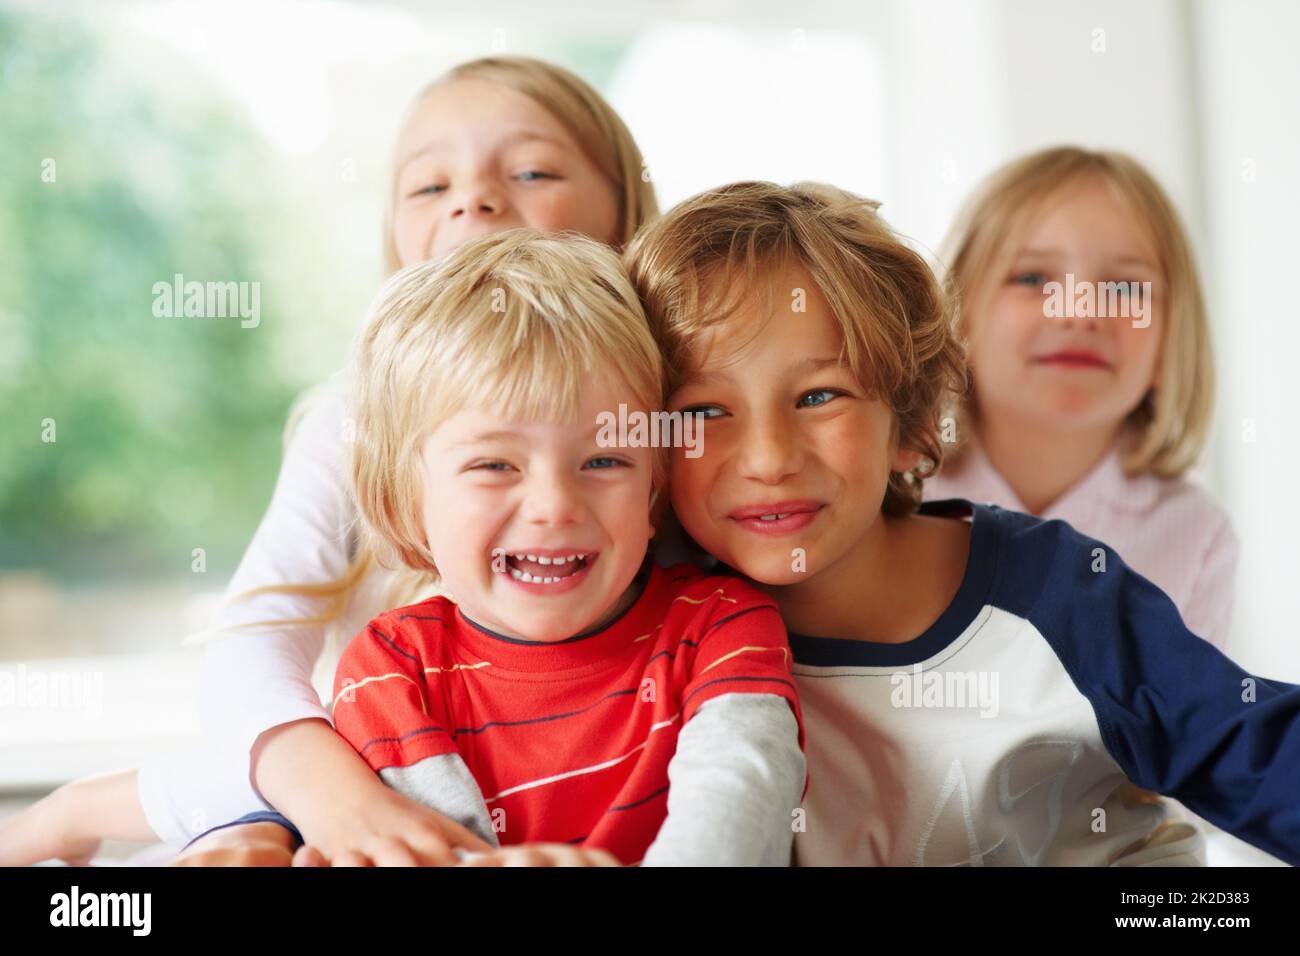 Ragazzino allegro con il fratello e le sorelle. Ritratto di un ragazzino allegro con il fratello e le sorelle. Foto Stock